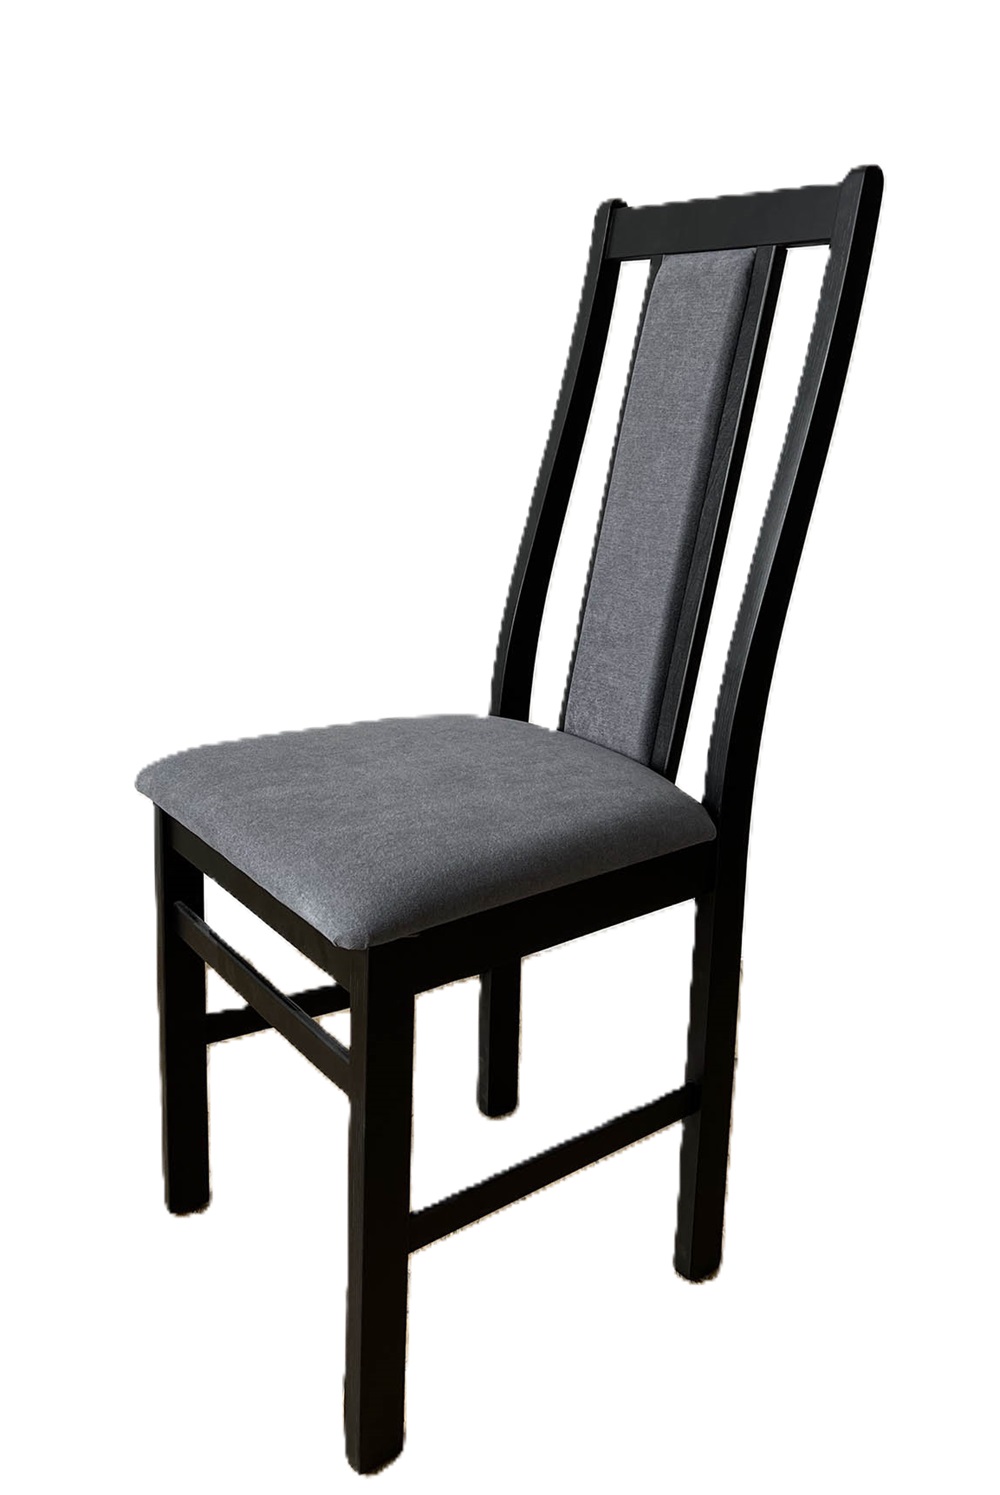 Деревянный стул со спинкой. Обивка из микровелюра. Цвет венге/серый.